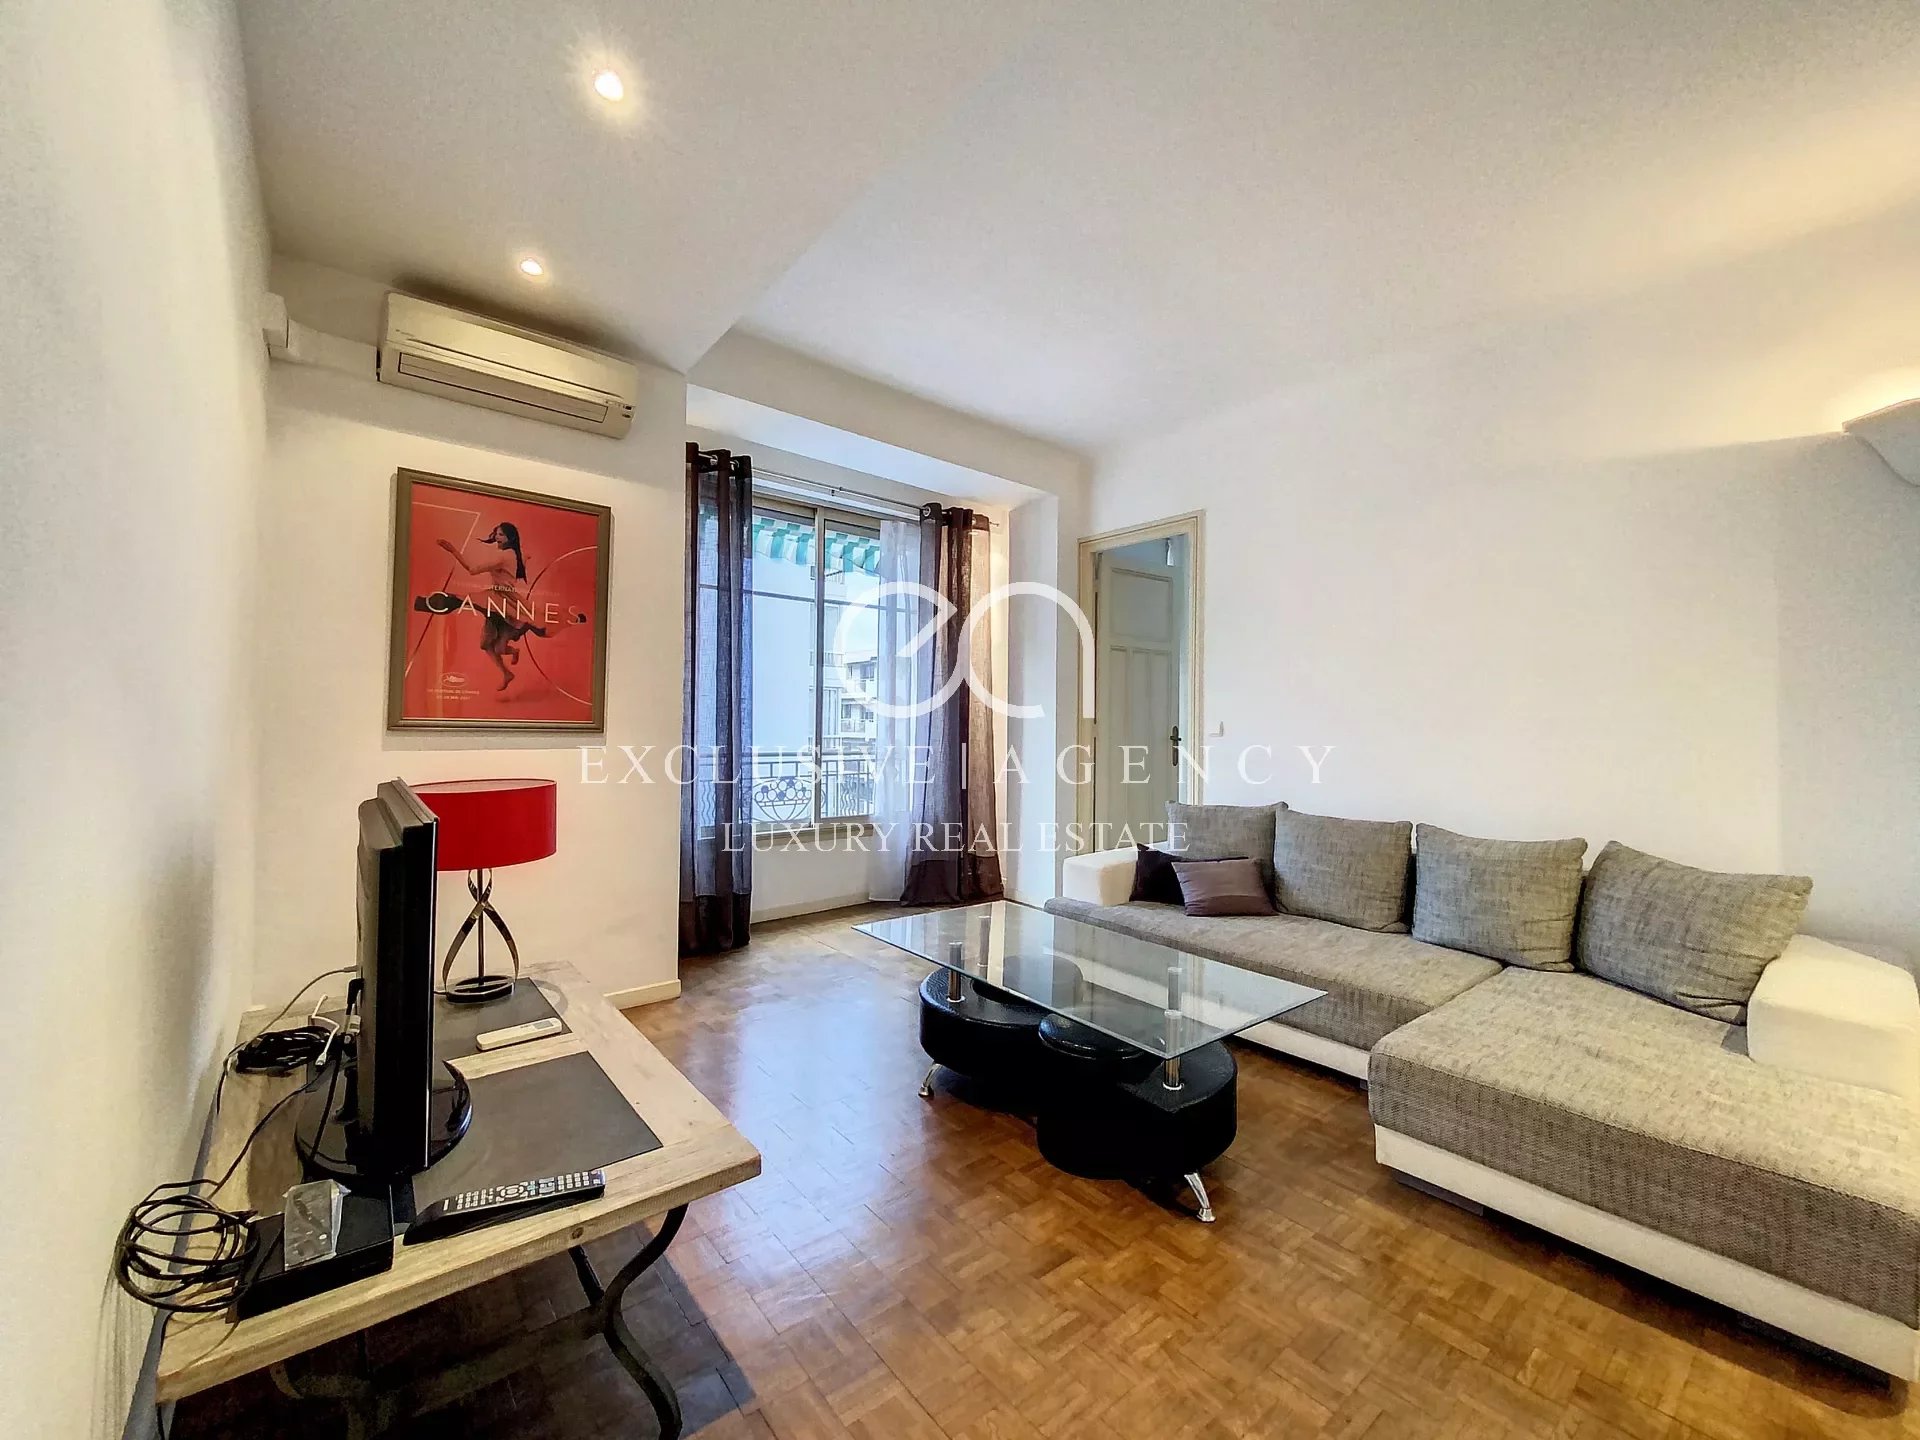 Vermietung im Zentrum von Cannes, möblierte 3-Zimmer-Wohnung, 85m², 200m von der Croisette entfernt